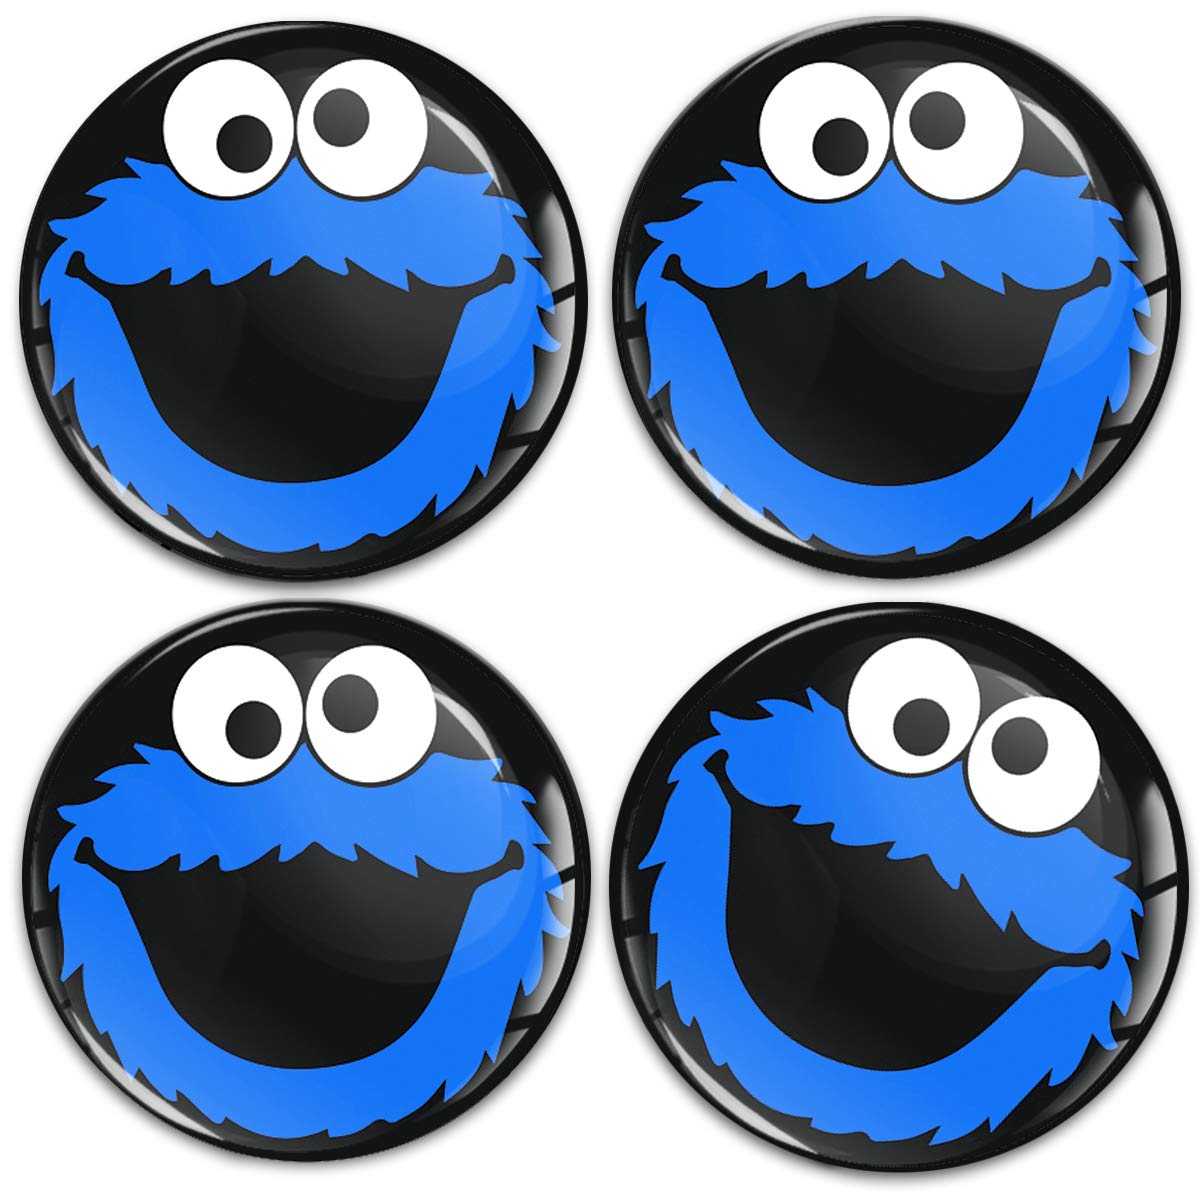 SkinoEu Aufkleber Autoaufkleber für Radkappen Nabenkappen Nabendeckel Radnabendeckel Rad-Aufkleber 65mm Schwarz Blau Elmo Cookie Monster A 5865 von Skino